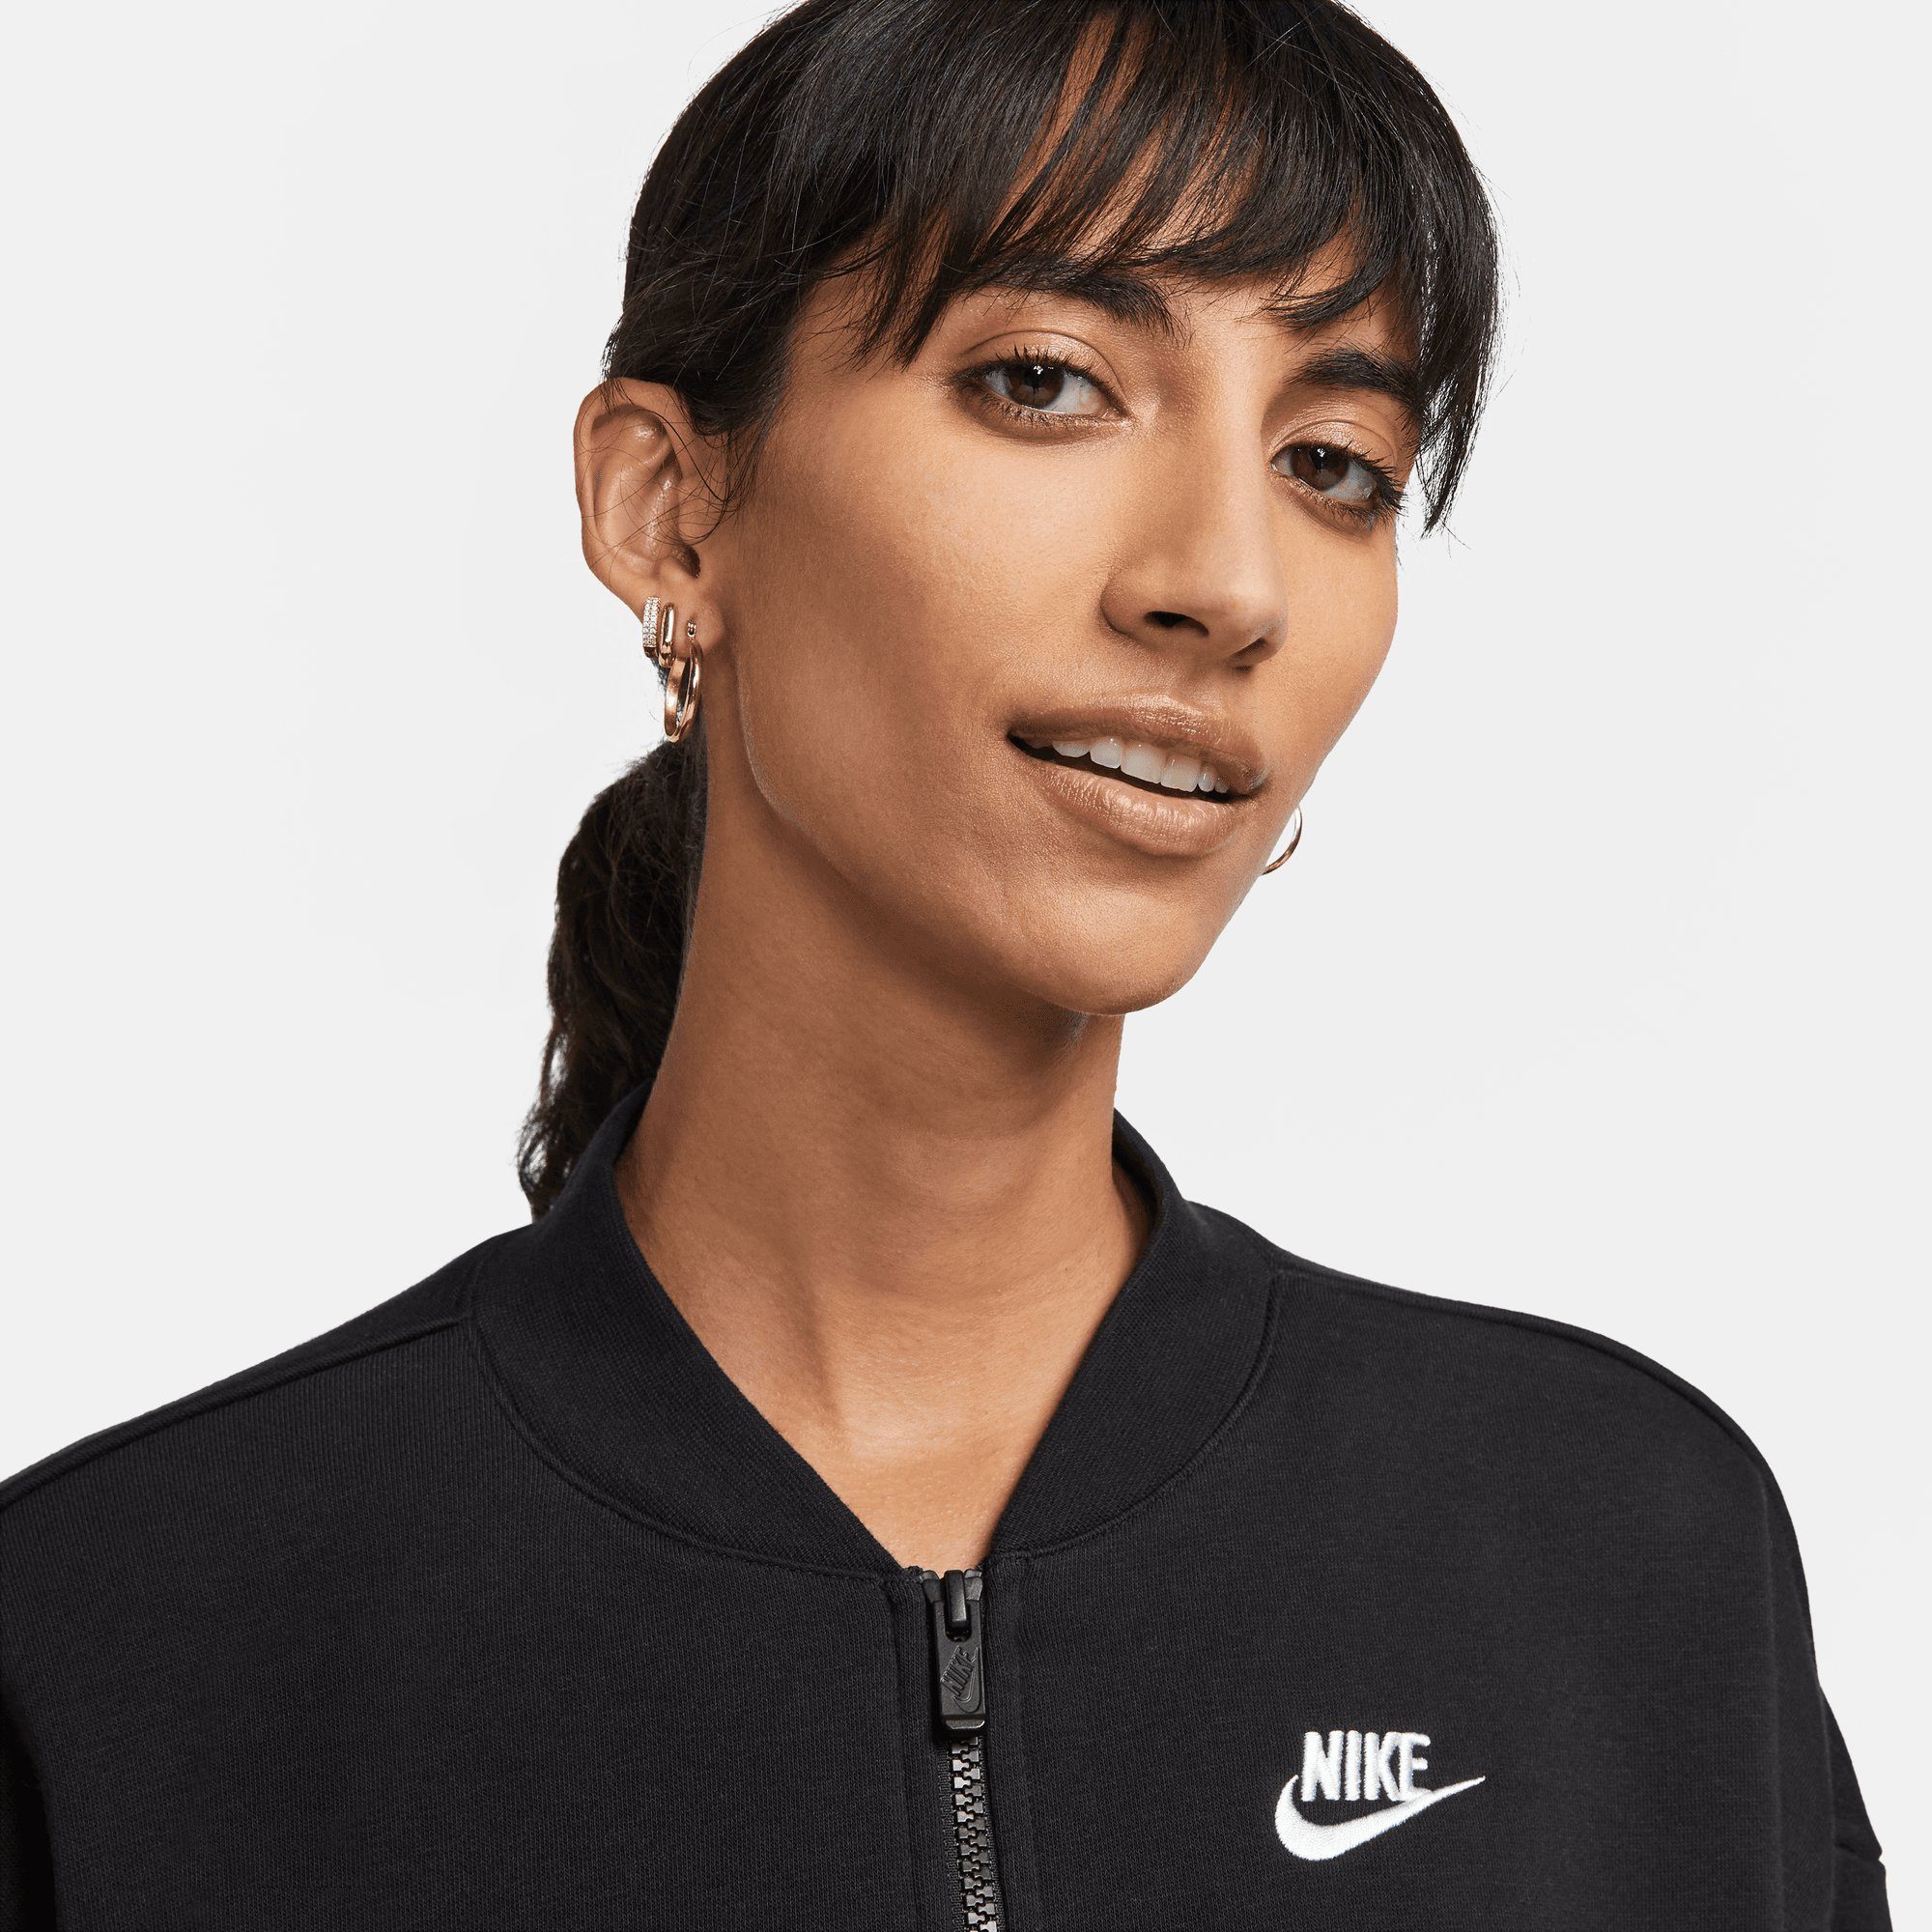 FULL-ZIP Nike JACKET WOMEN'S Sweatjacke OVERSIZED Sportswear BLACK/WHITE FLEECE CROPPED CLUB